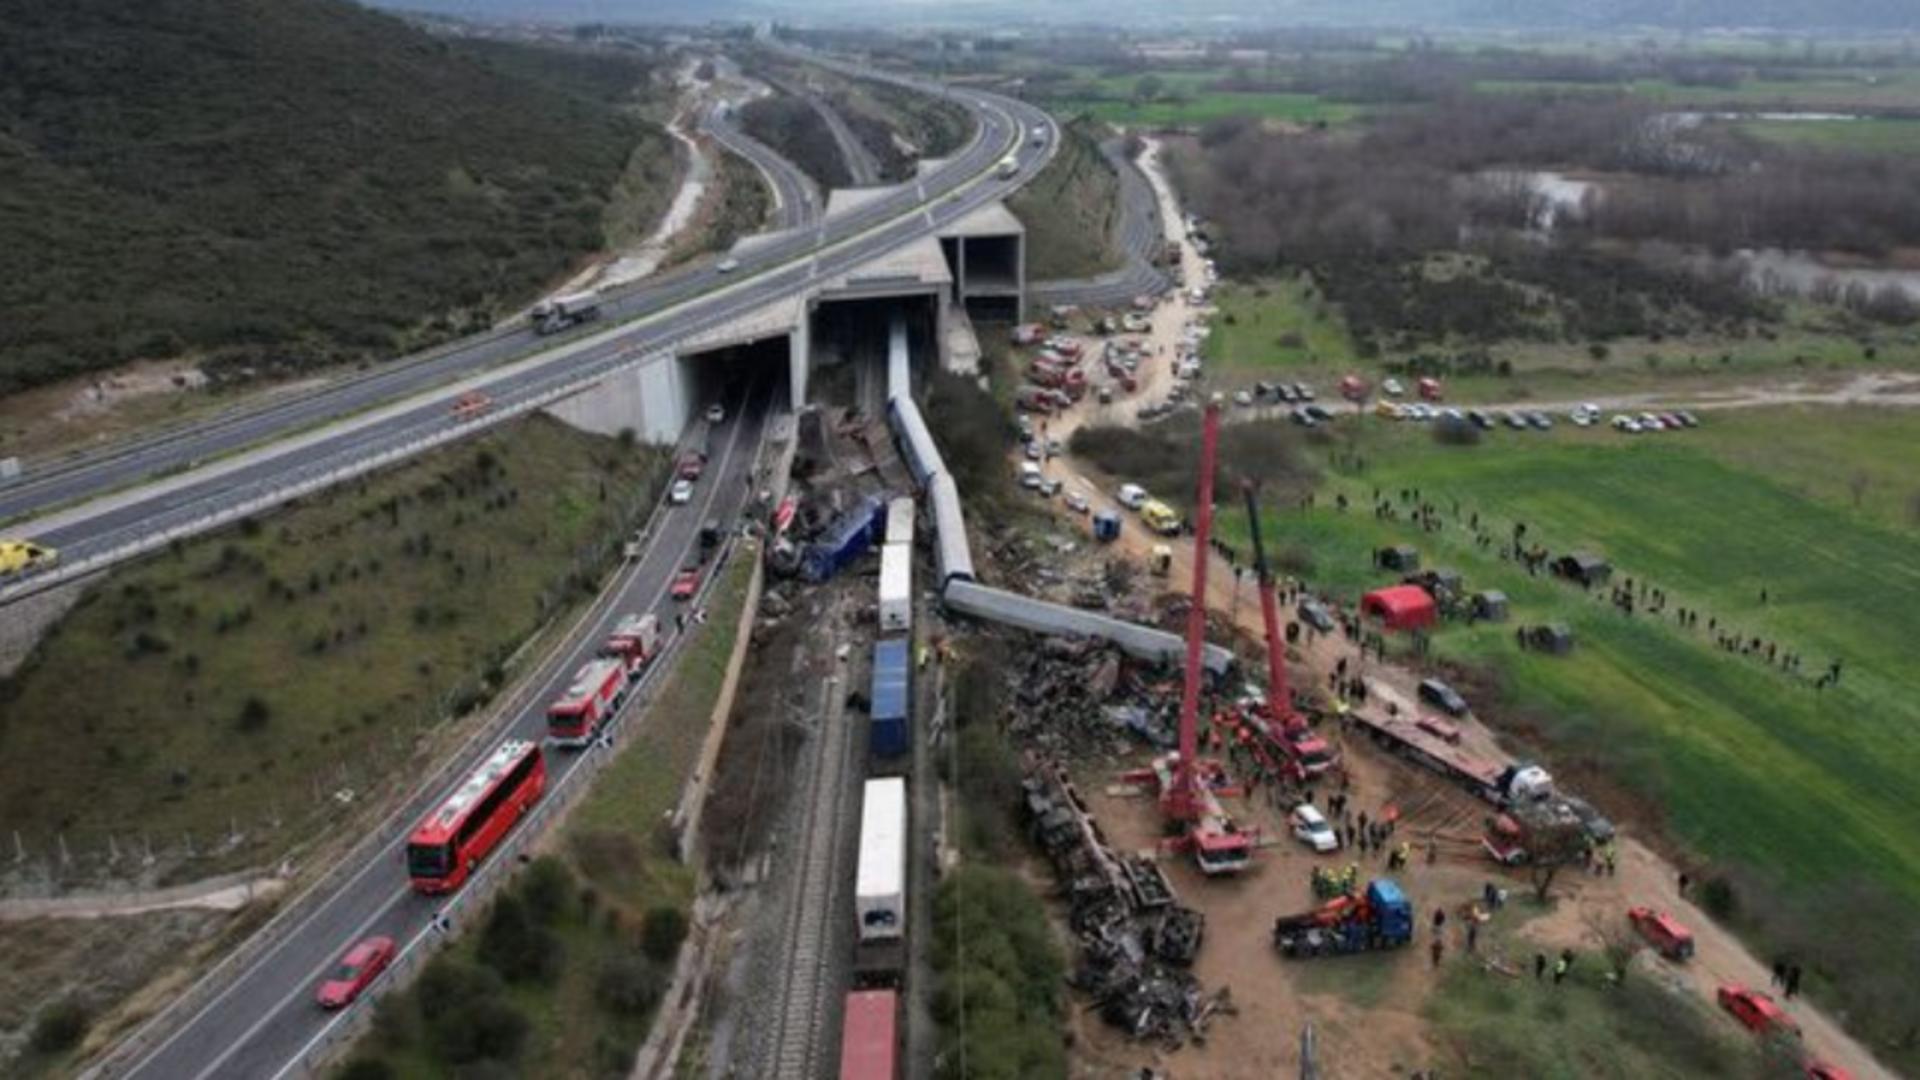 Doliu național pentru 3 zile în Grecia după tragedia feroviară în care au murit cel puțin 39 de oameni